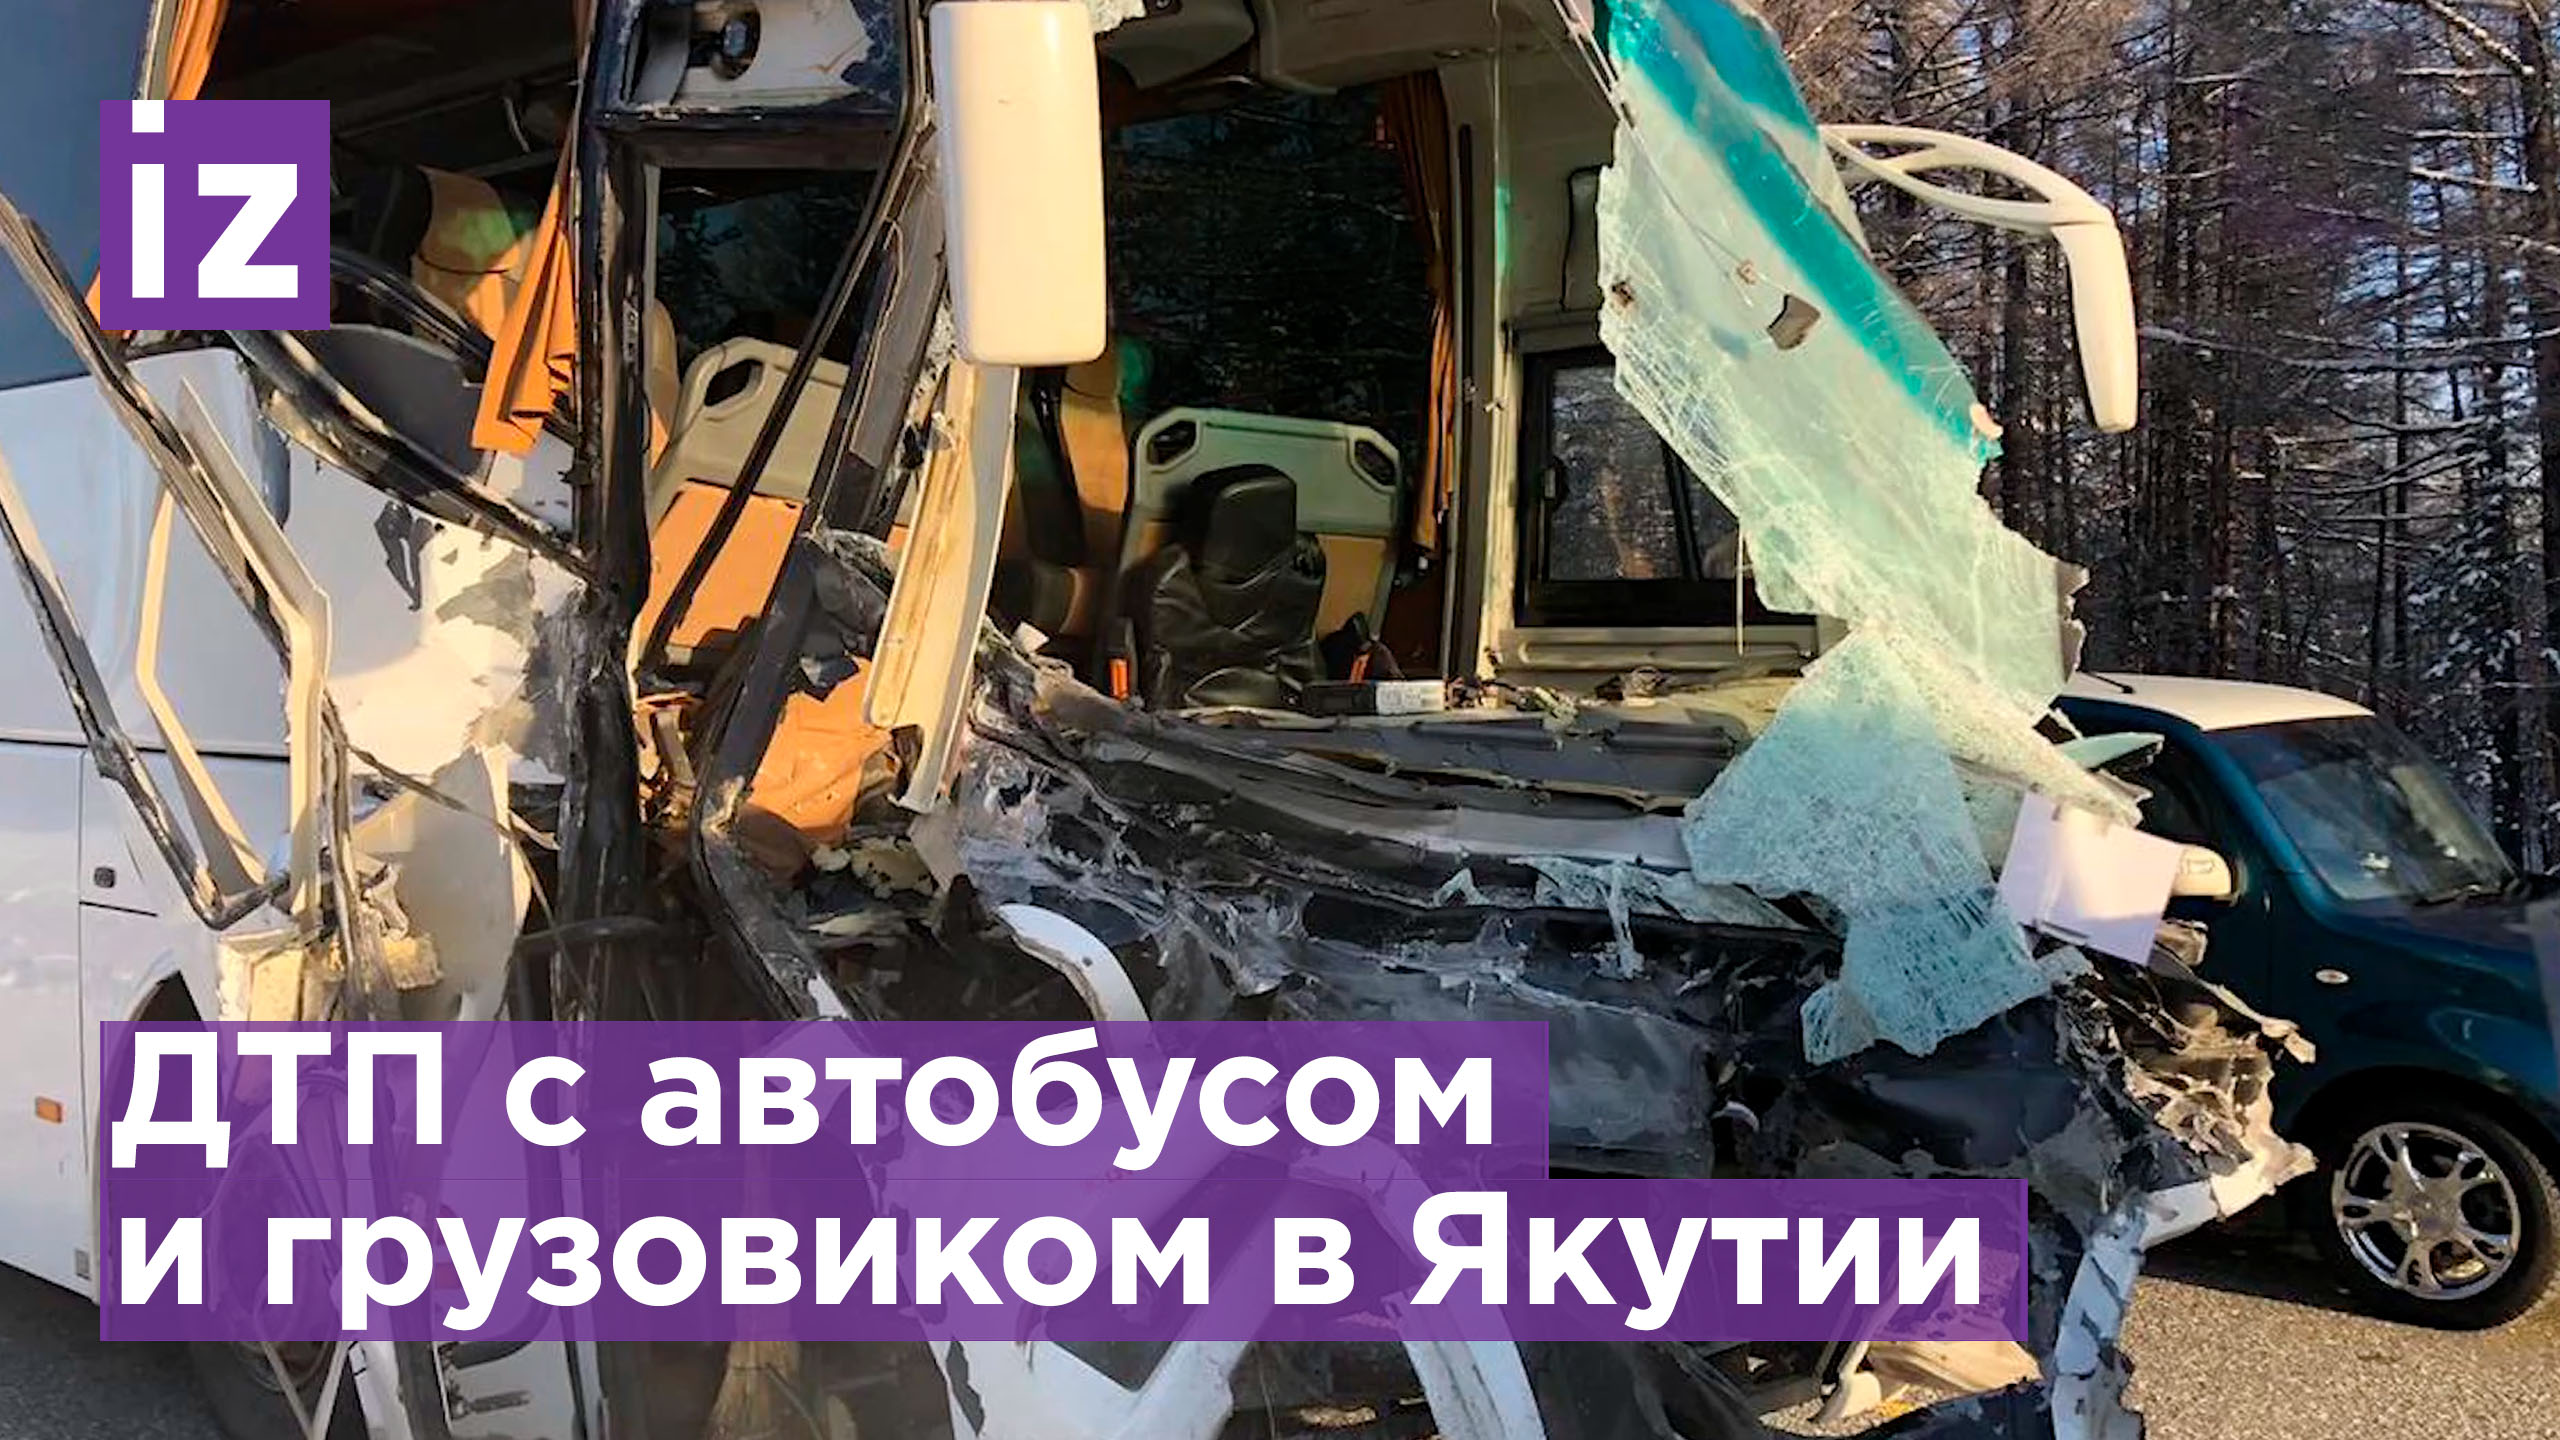 Автобус врезался в грузовик в Якутии. Пострадали 11 человек / Известия